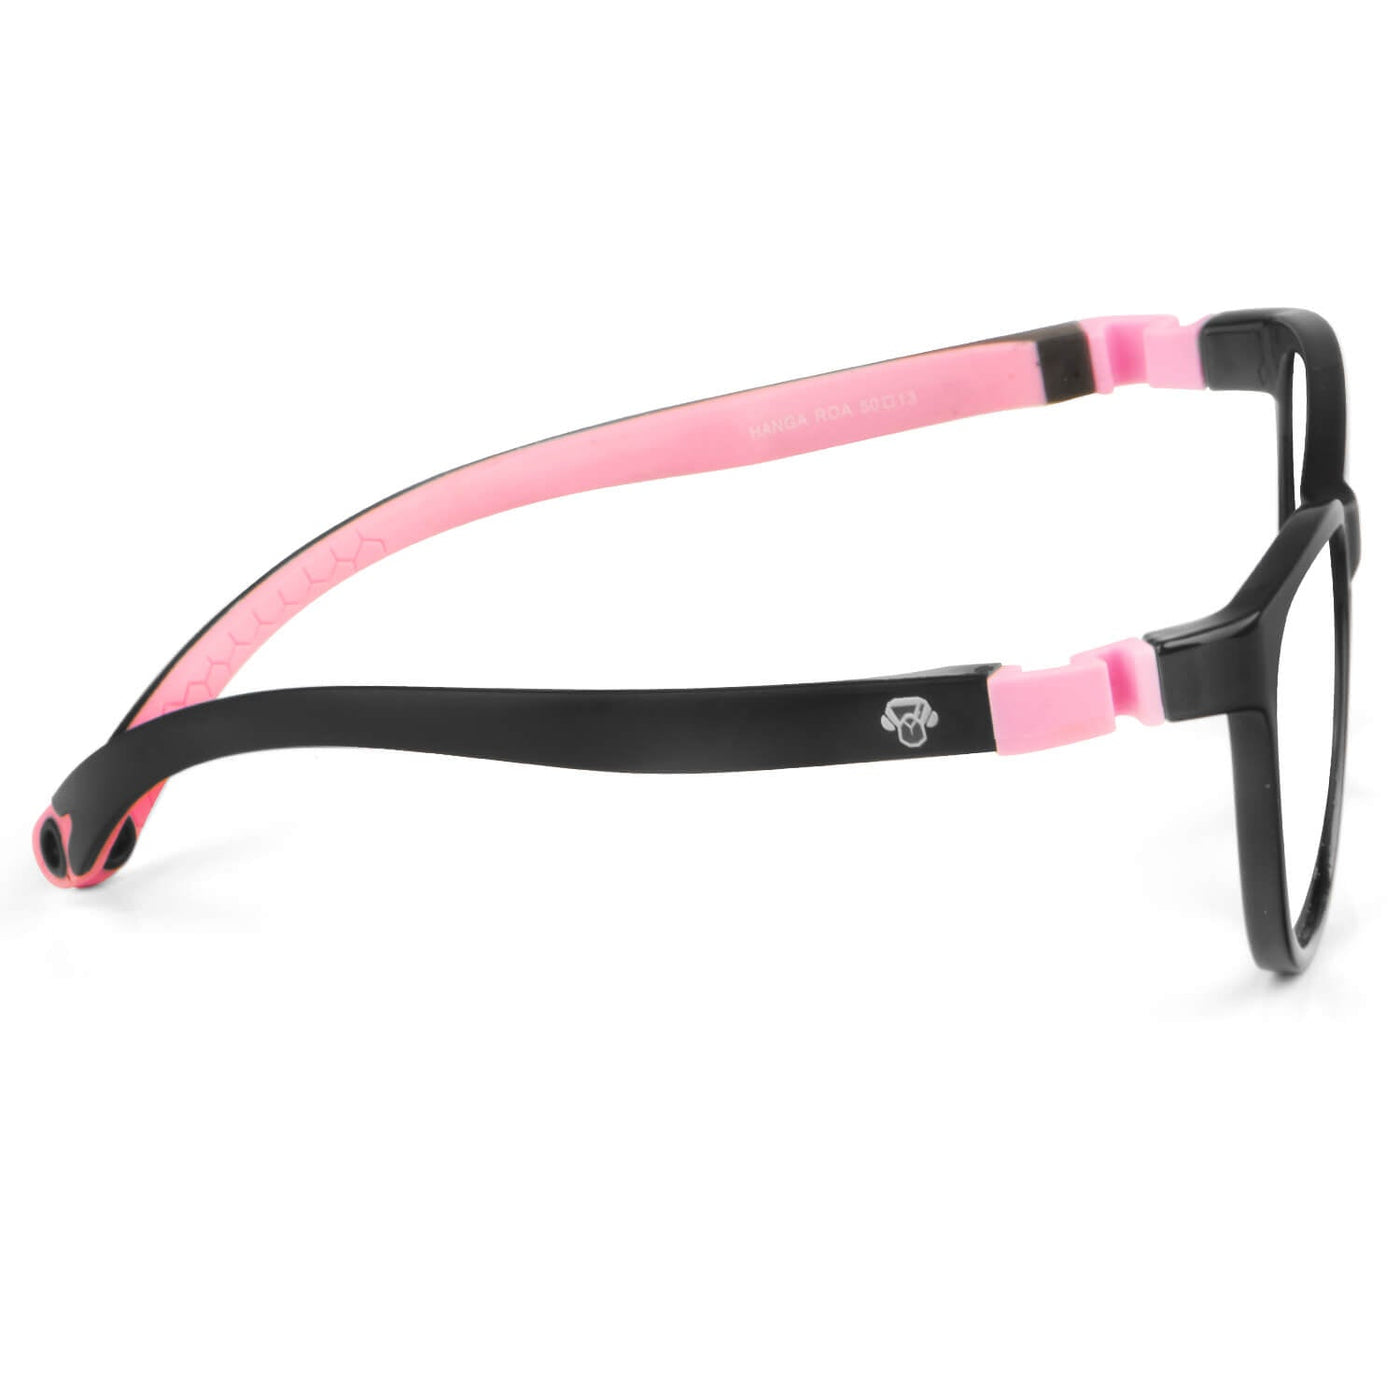 marcos armazones y lentes opticos de moda flexibles para niñas de niños miraflex goma gratis oferta descuento